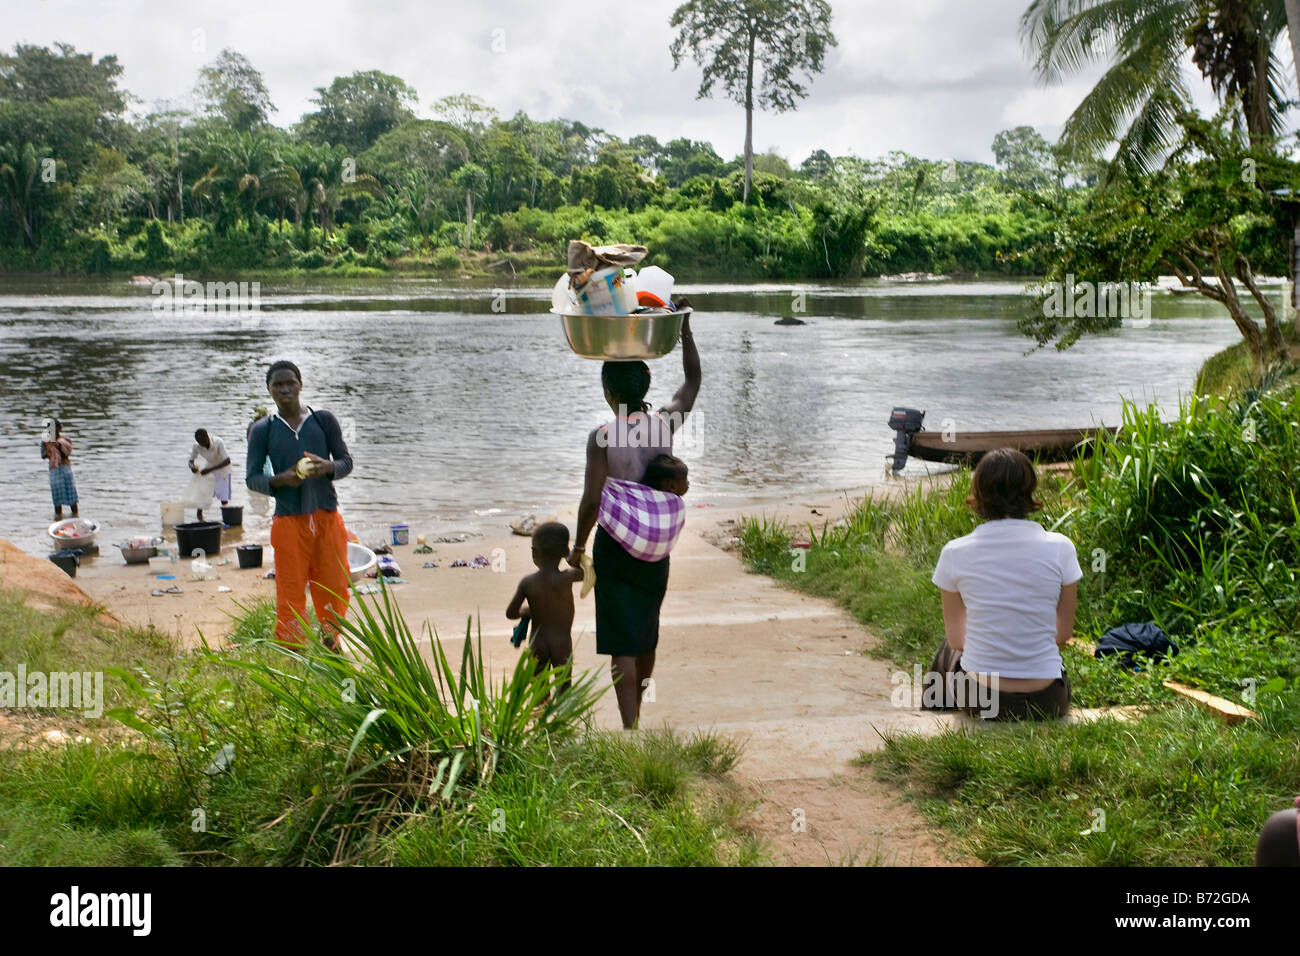 Le Suriname, Laduani, sur la rive de la rivière Suriname Boven. Les gens d'Saramaccaner tribu à la rivière. Touriste. Banque D'Images